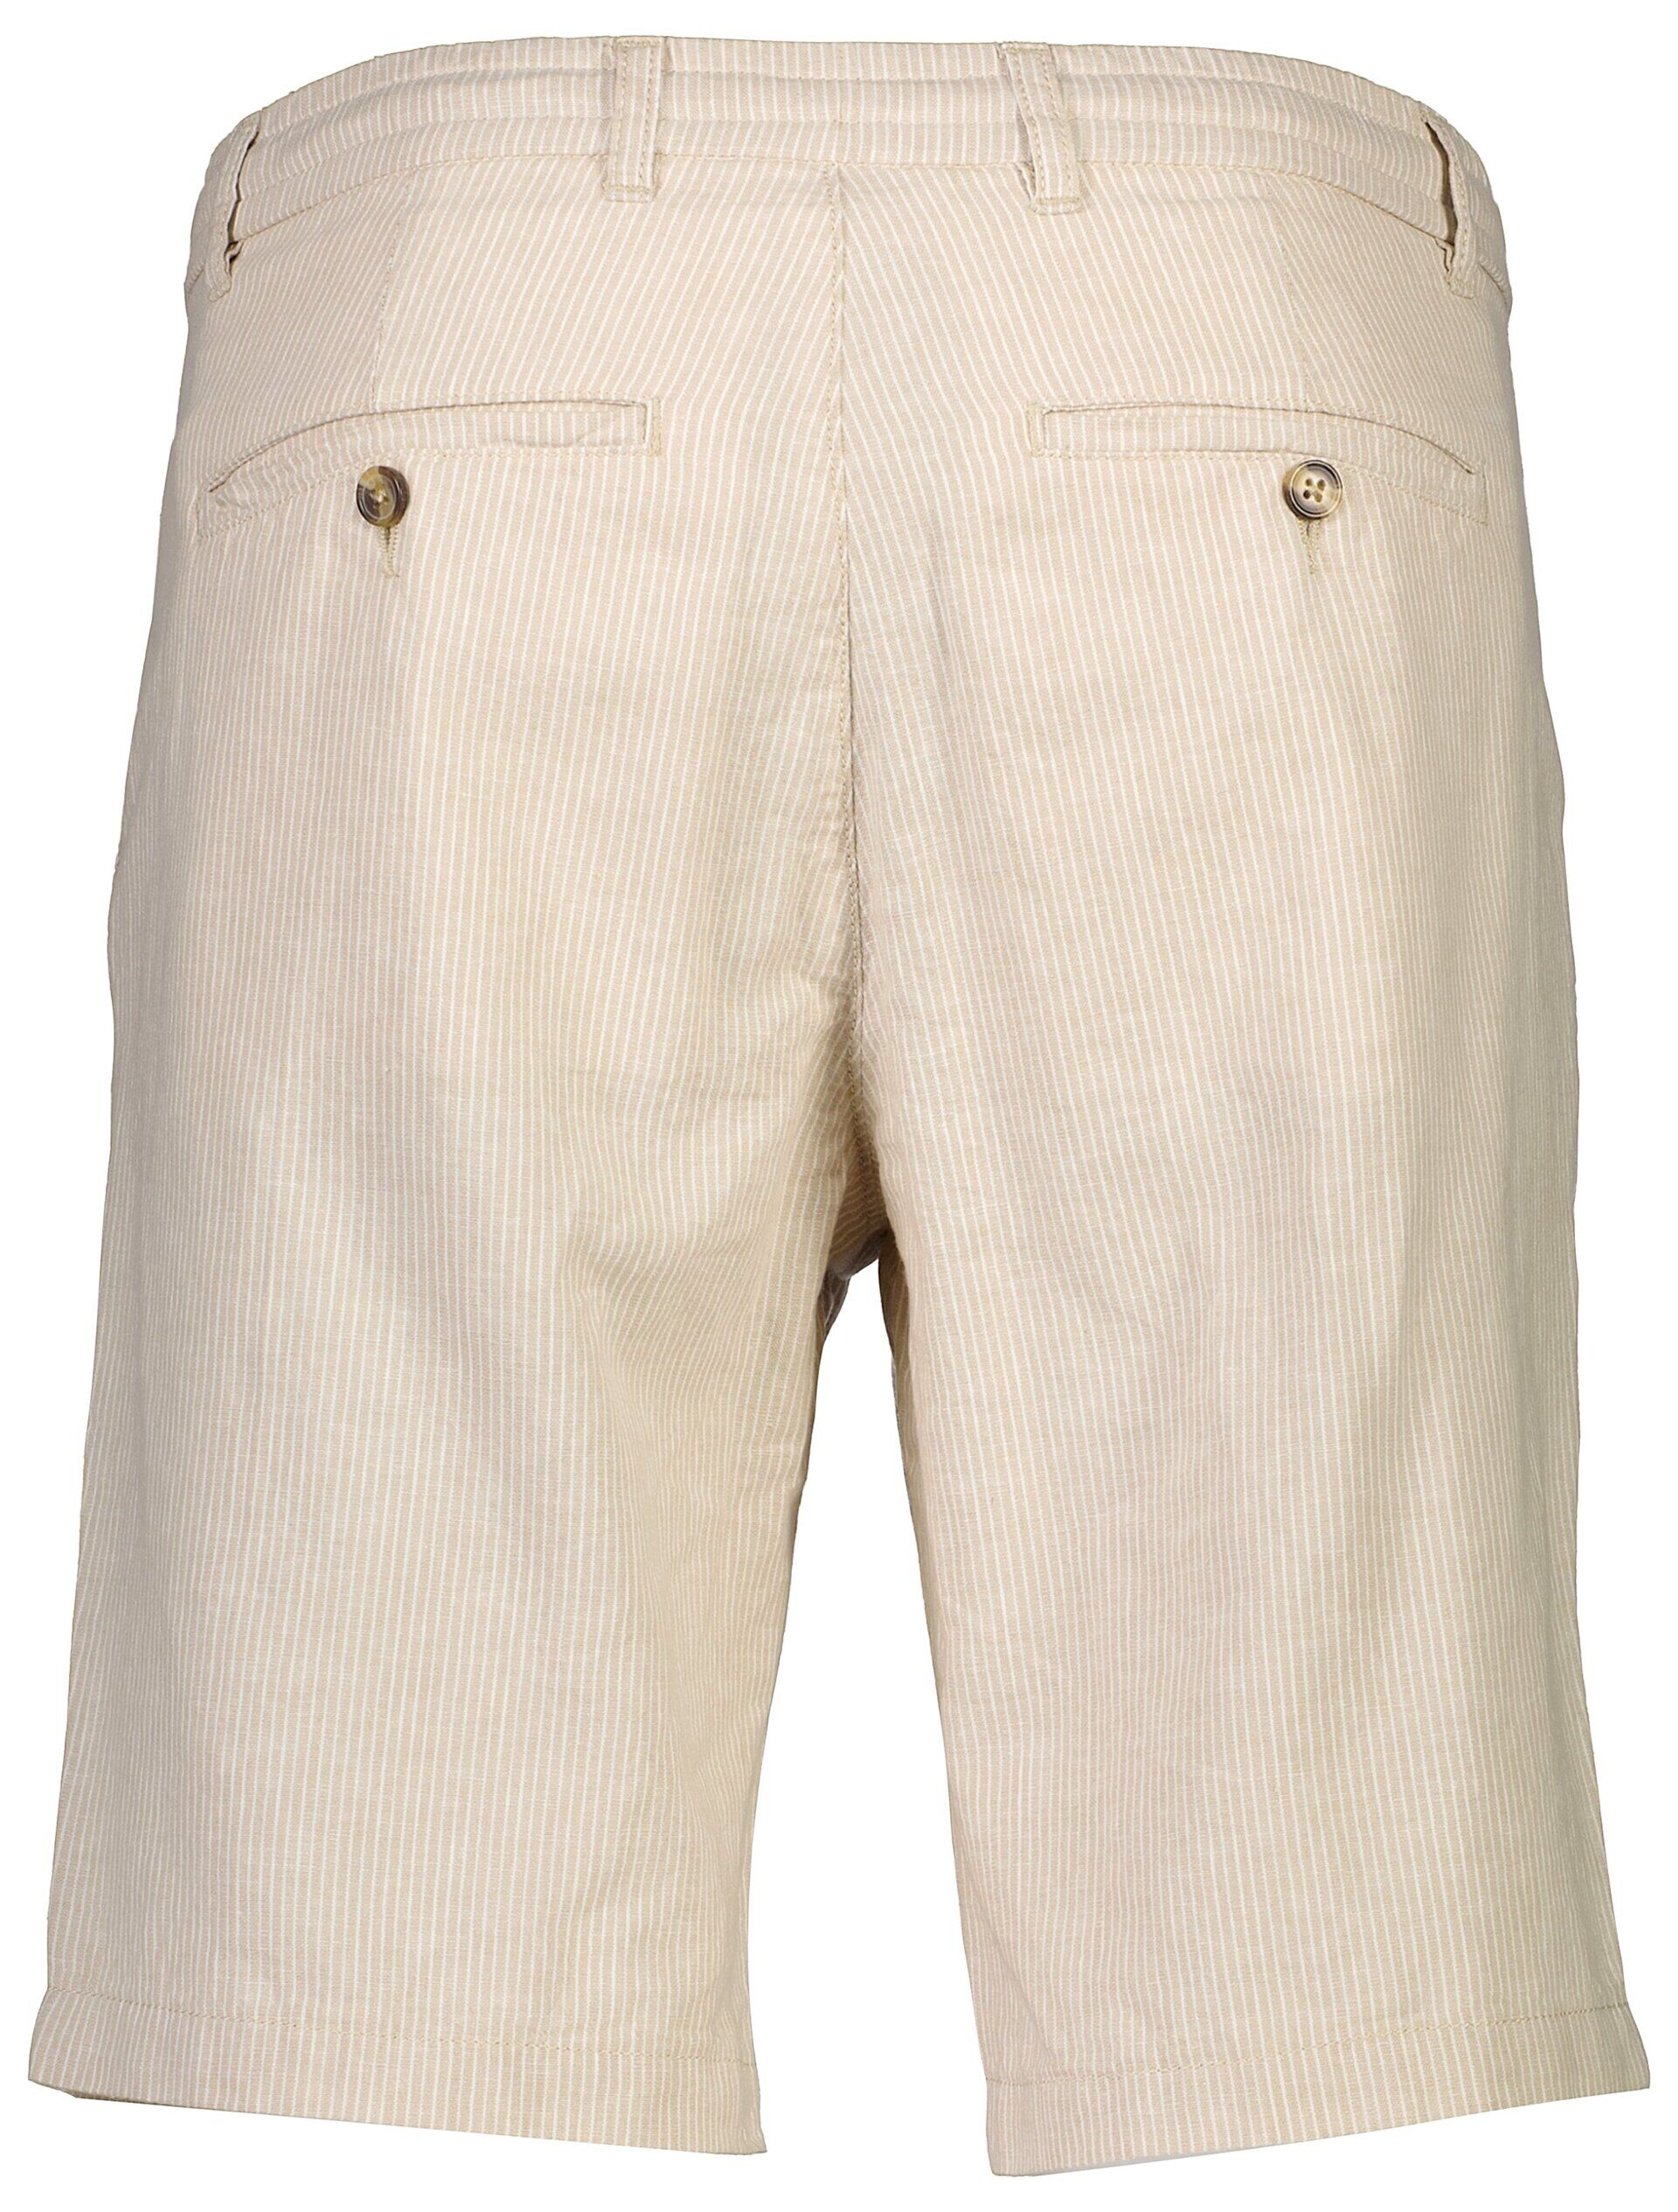 Linen shorts 30-505030